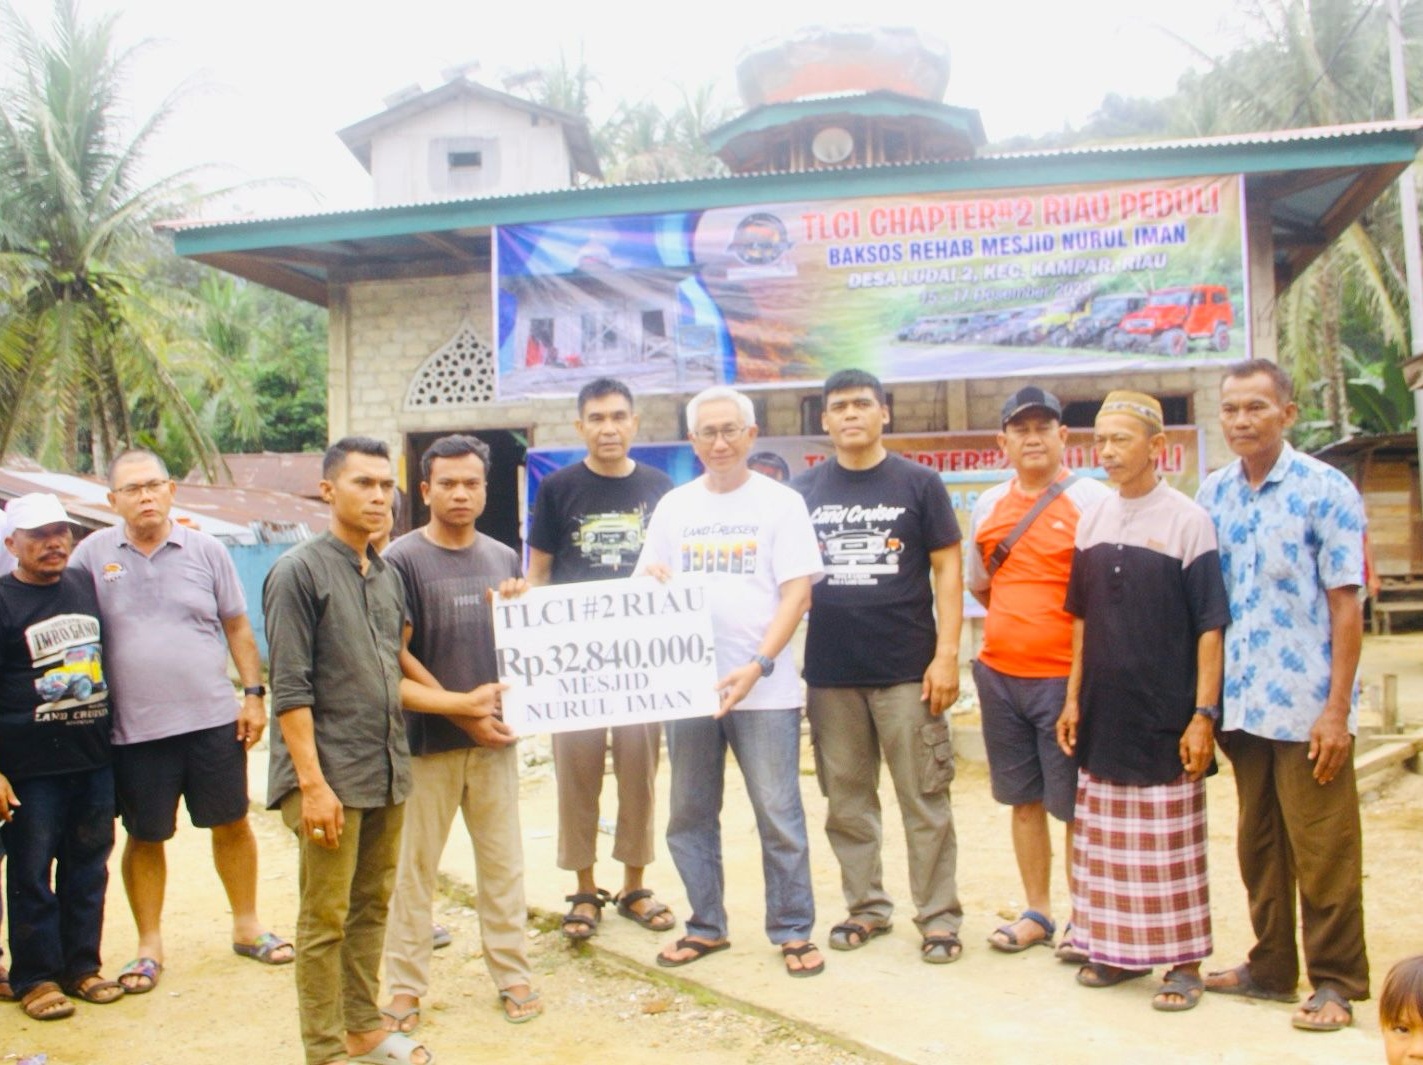 Terobos Sungai dan Jalan Berlumpur, Tim Bansos TLCI Chapter#2 Riau Berikan Bantuan untuk Warga Pelosok